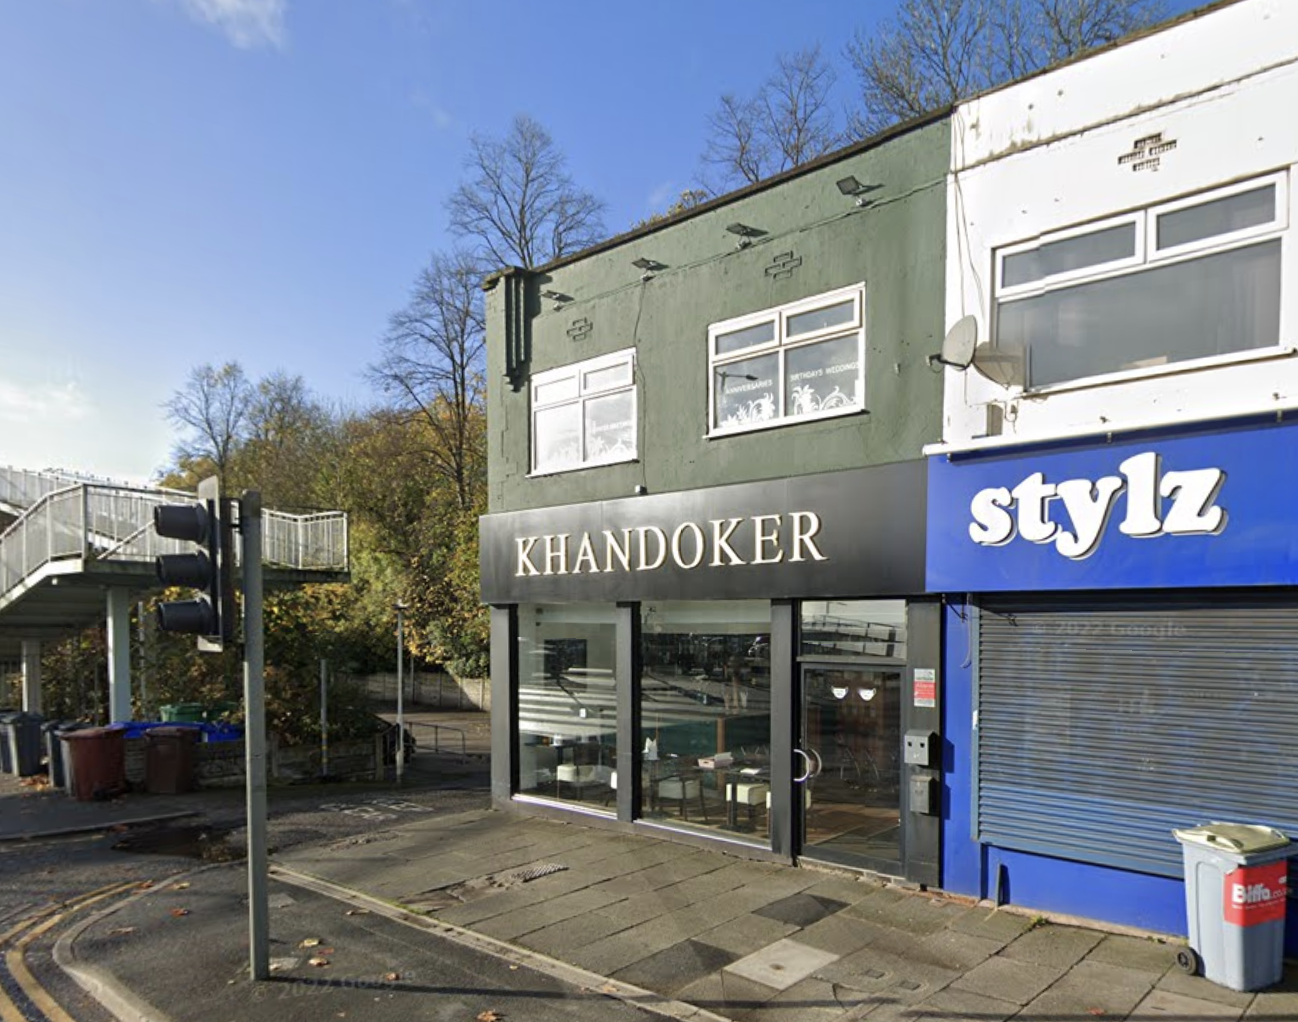 Khandoker Indian restaurant in Didsbury, Manchester